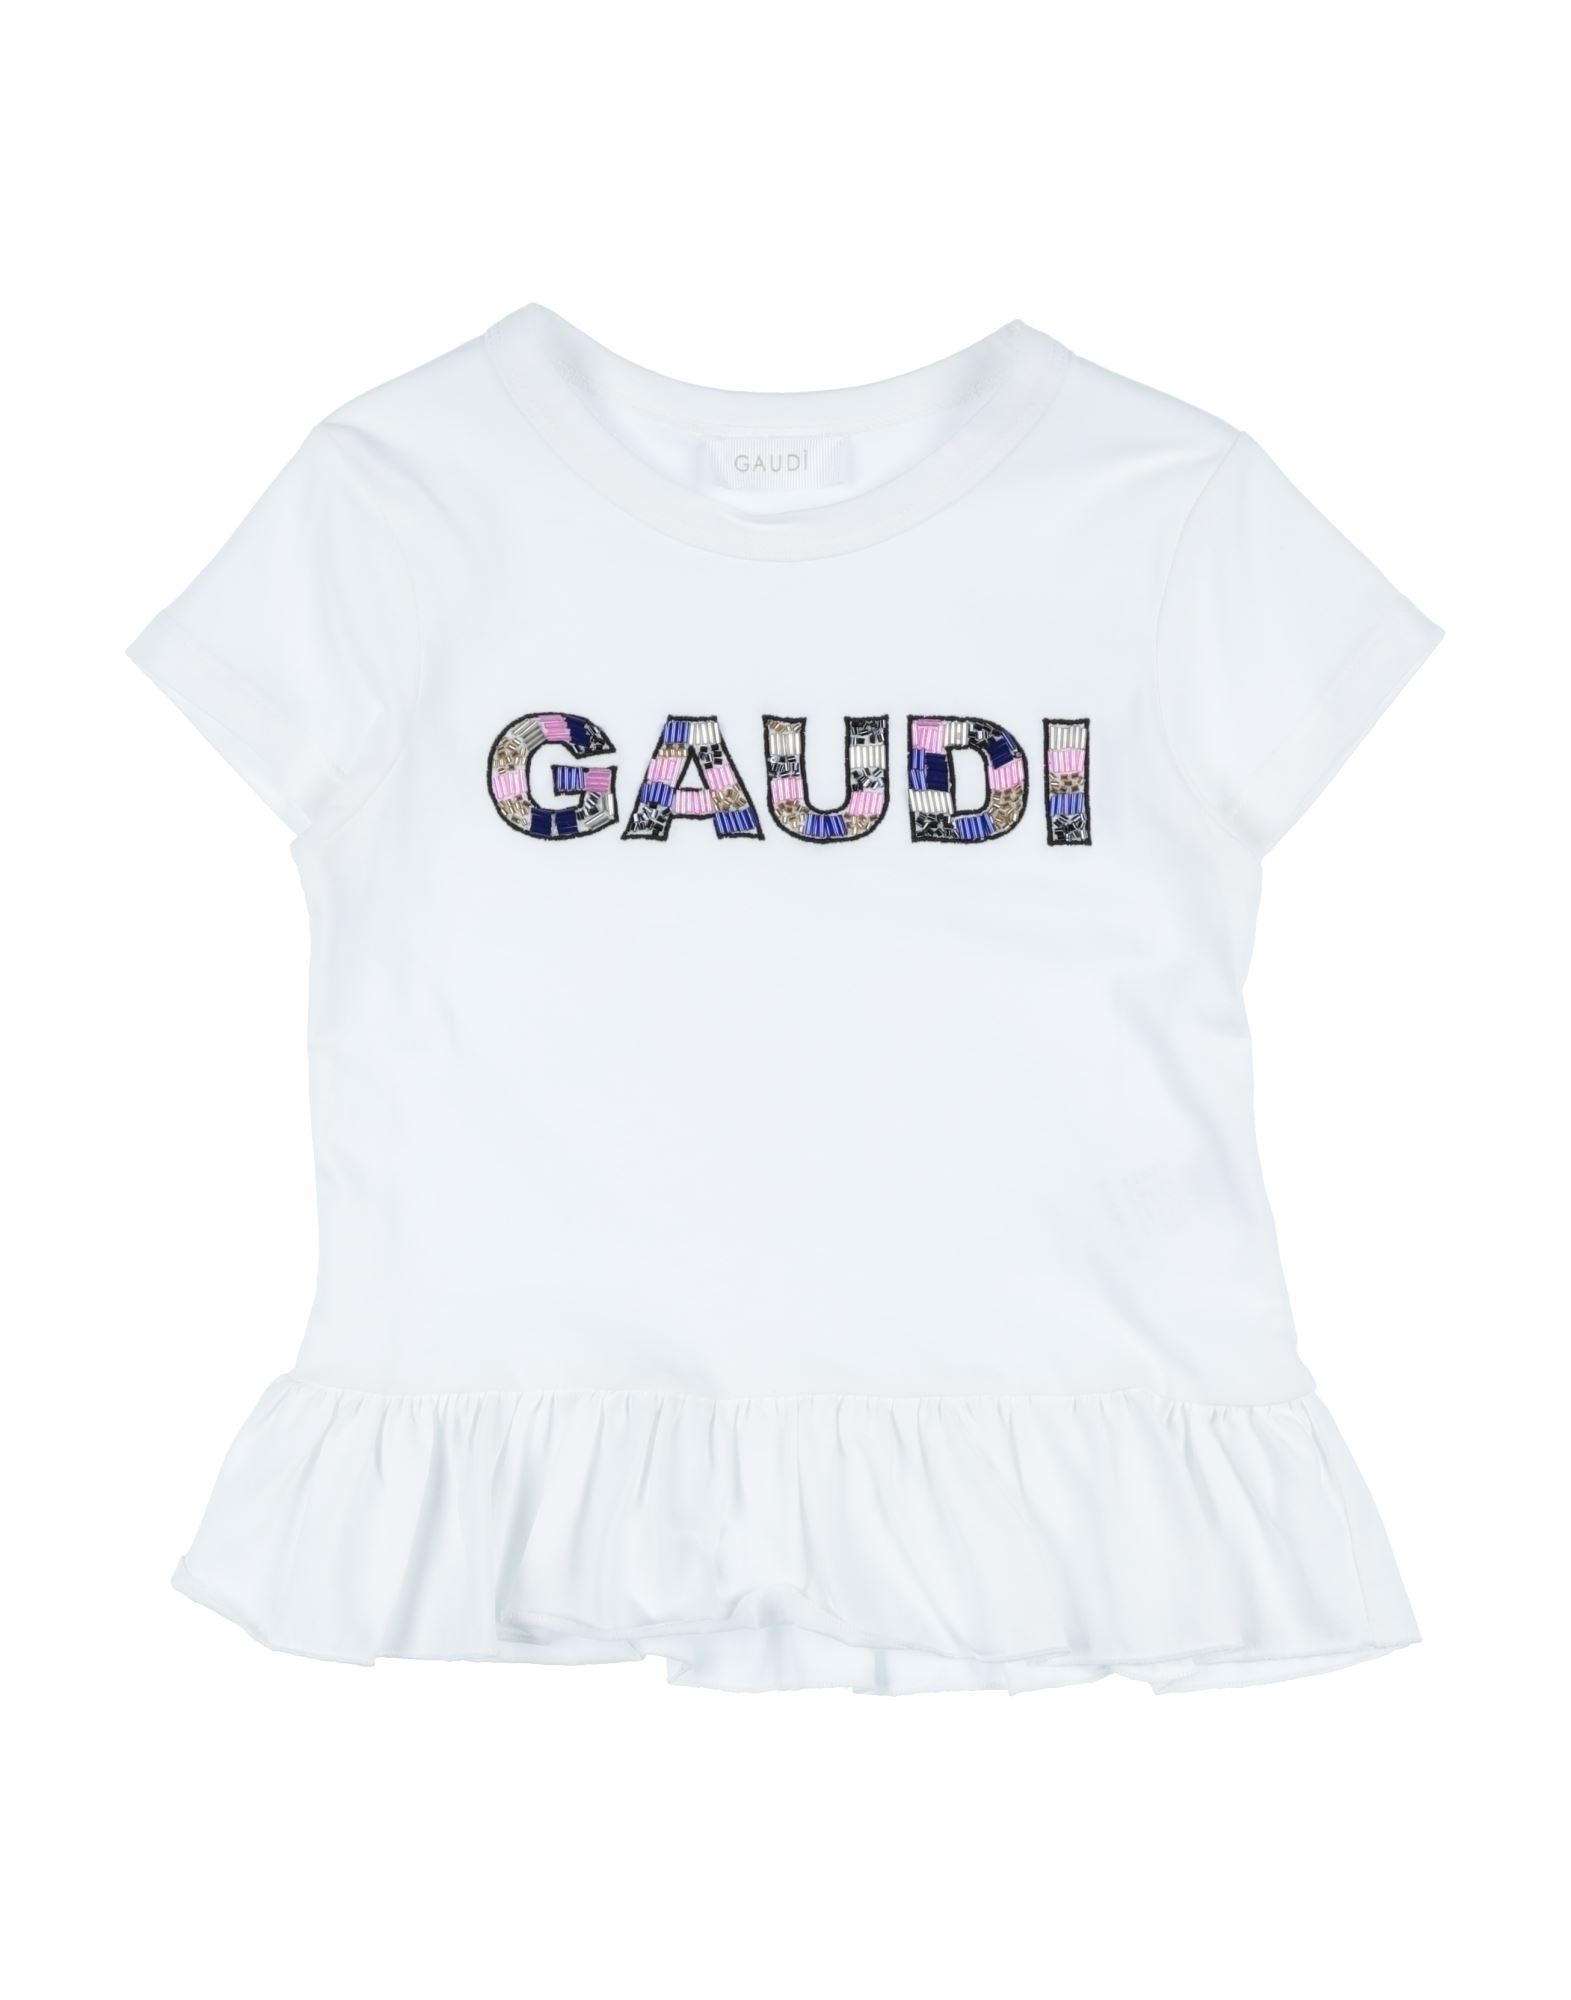 Gaudì Kids'  Toddler Girl T-shirt White Size 4 Cotton